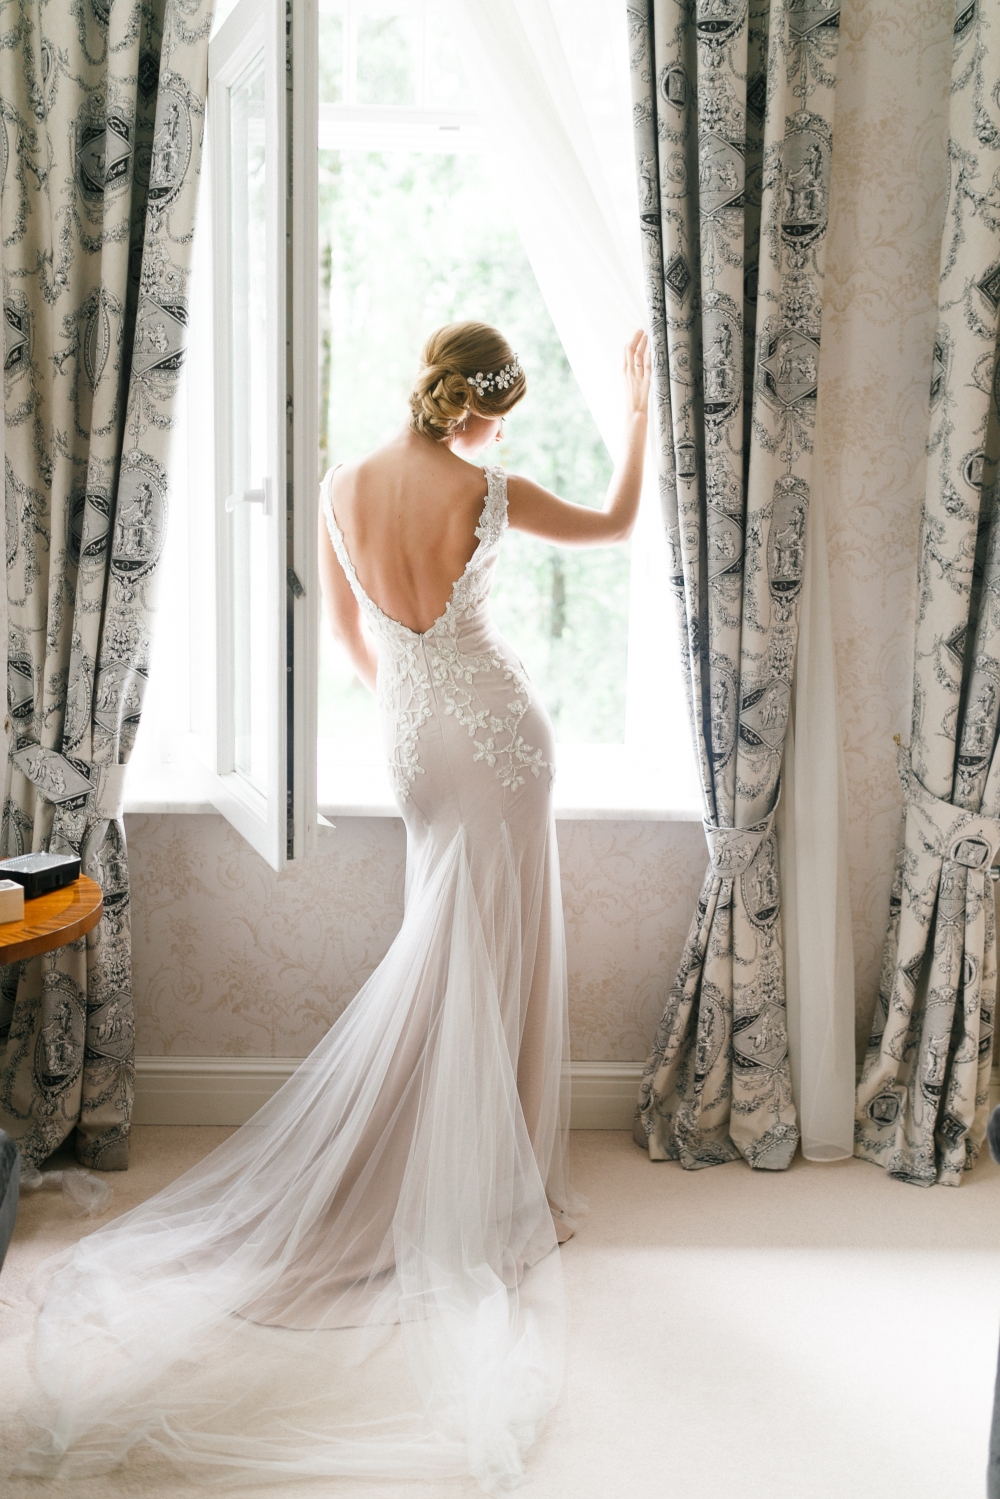 невеста стоит у окна спиной к зрителю